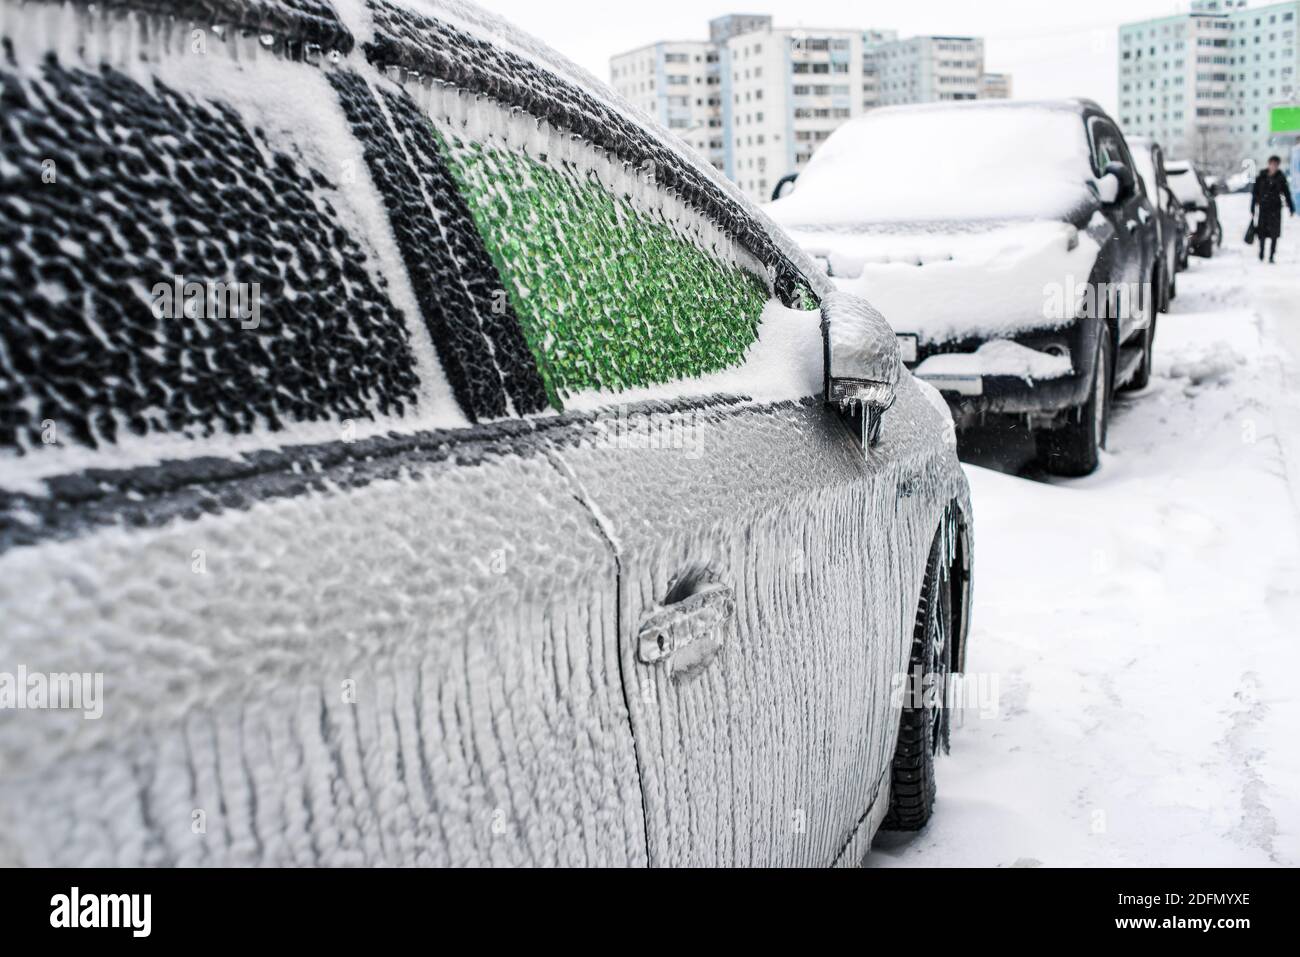 Auto mit Eis und Eiszapfen bedeckt nach Glatteisregen. Eissturmzyklon. Schneebedecktes Wetter. Stadt im Winter. Frostige Szenen im Winter. Stockfoto